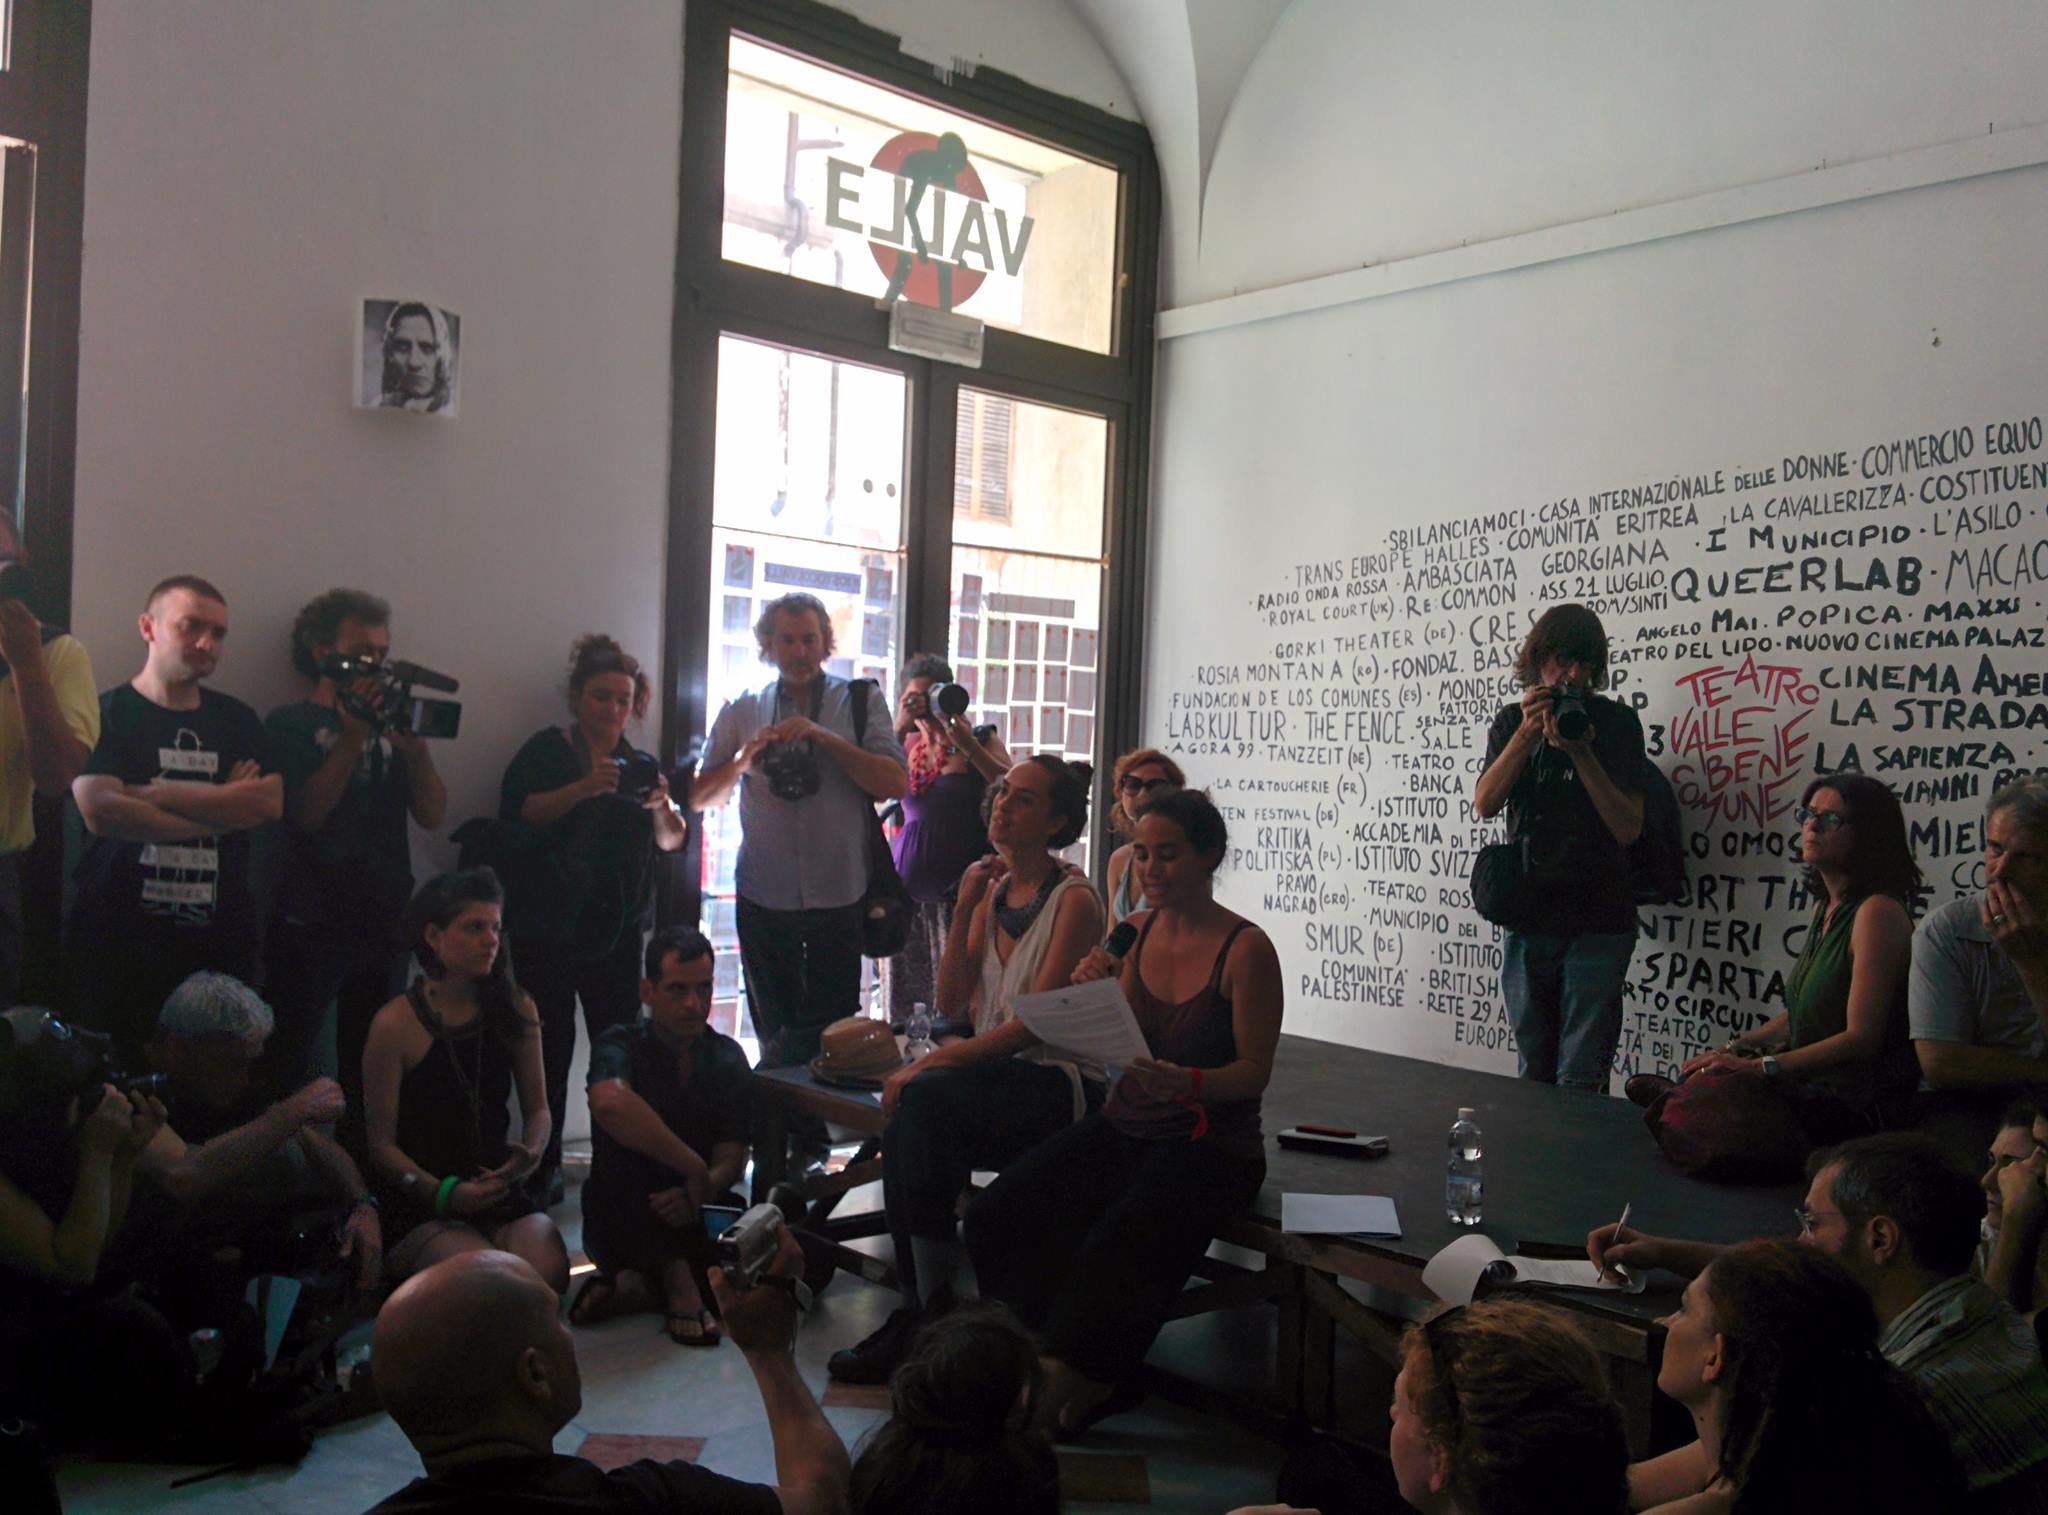 Teatro Valle, l'occupazione (in)finita: attivisti nel foyer per dettare le condizioni al Comune